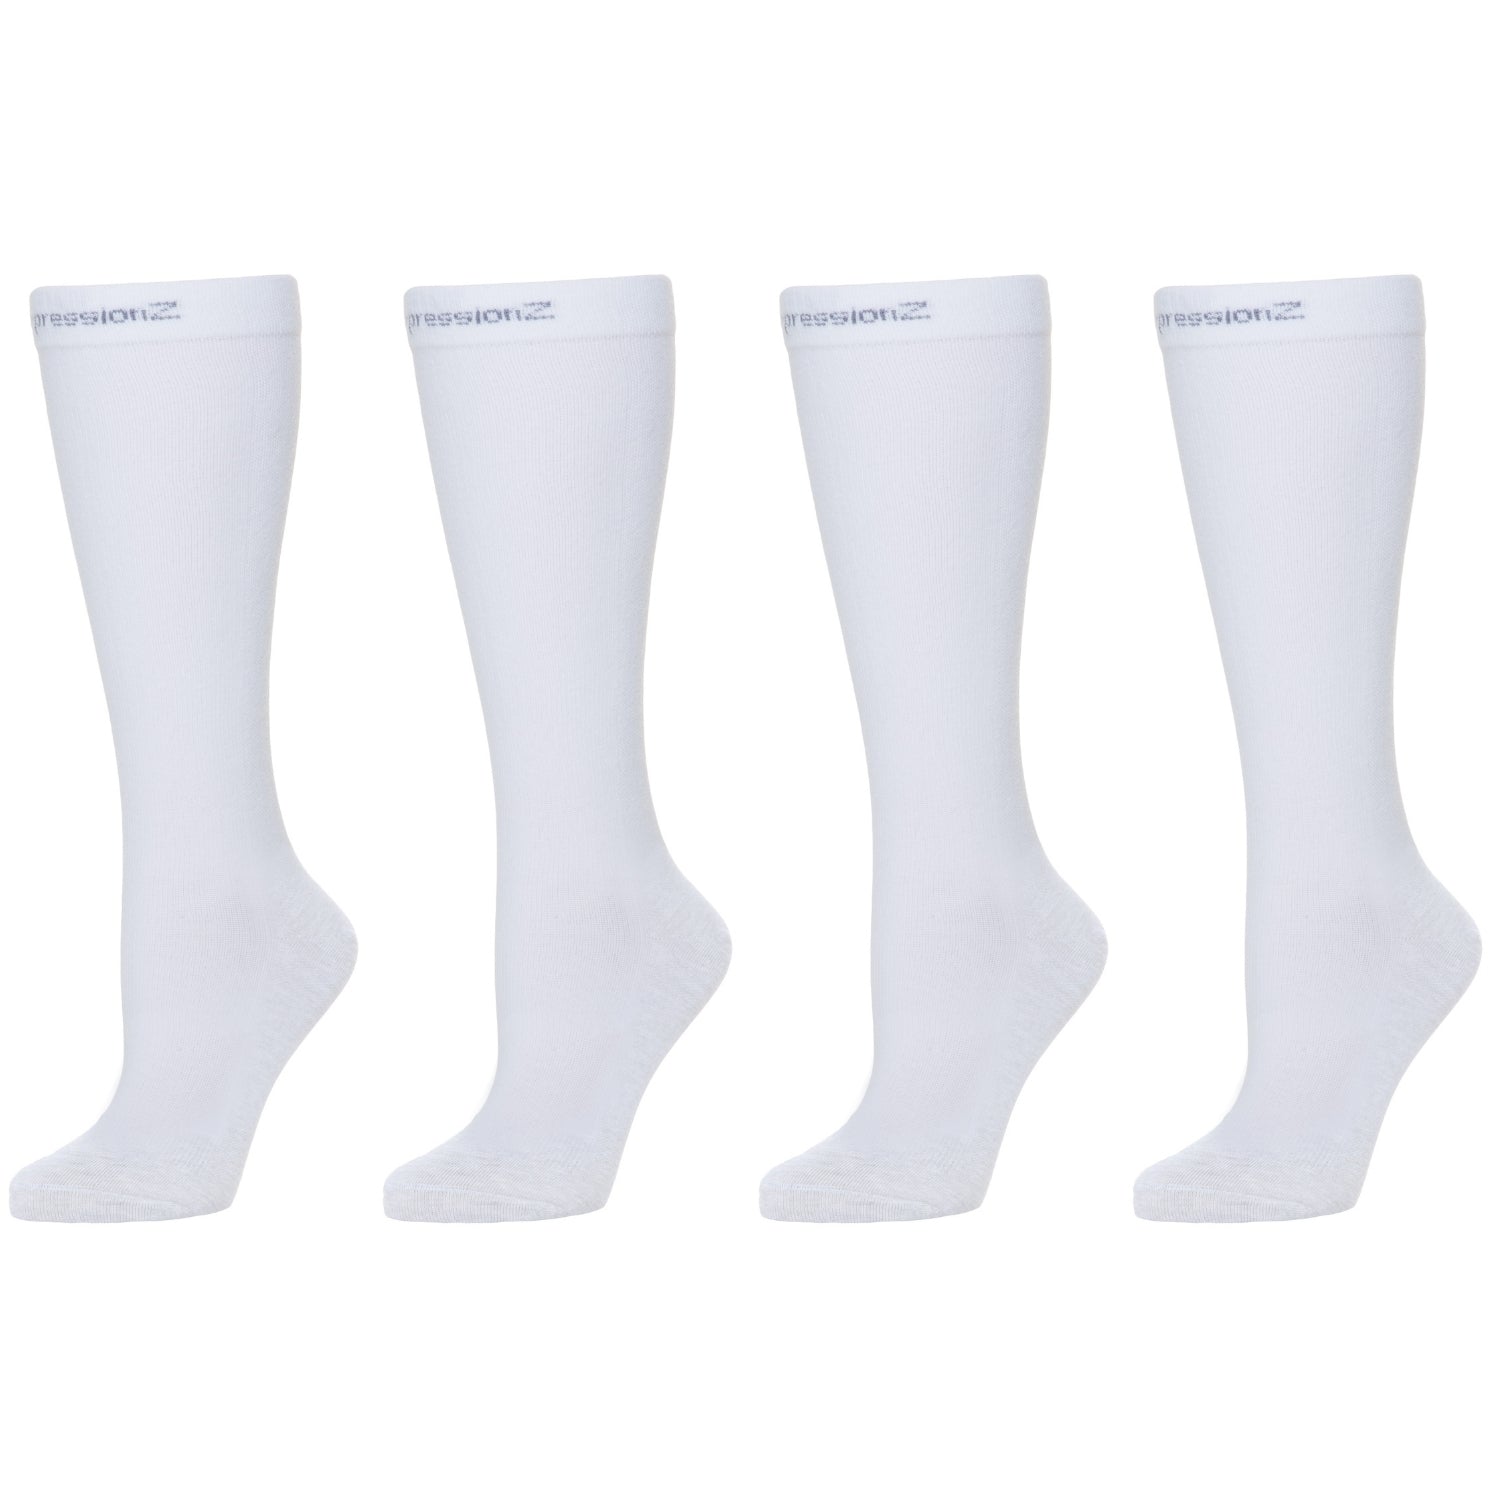 Compression Socks (30-40 mmHg) - White 2 Pack